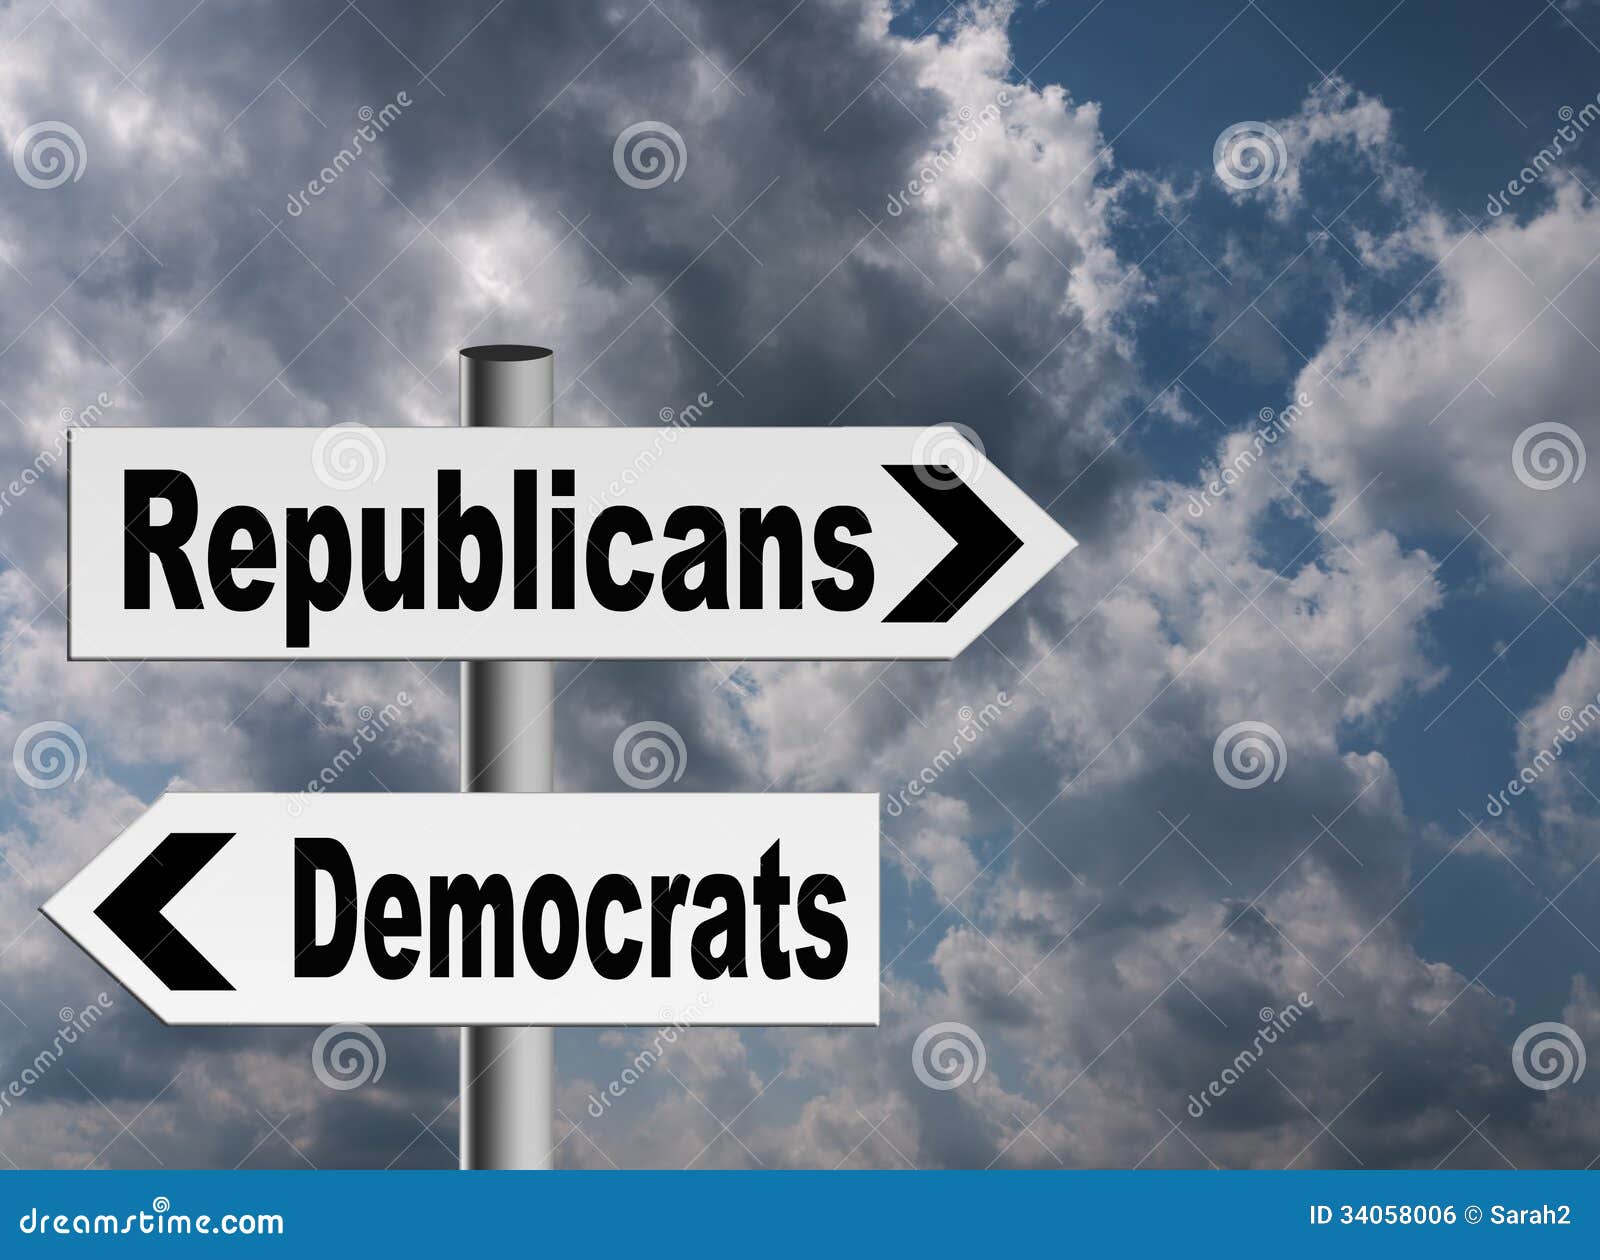 us politics - republicans and democrats